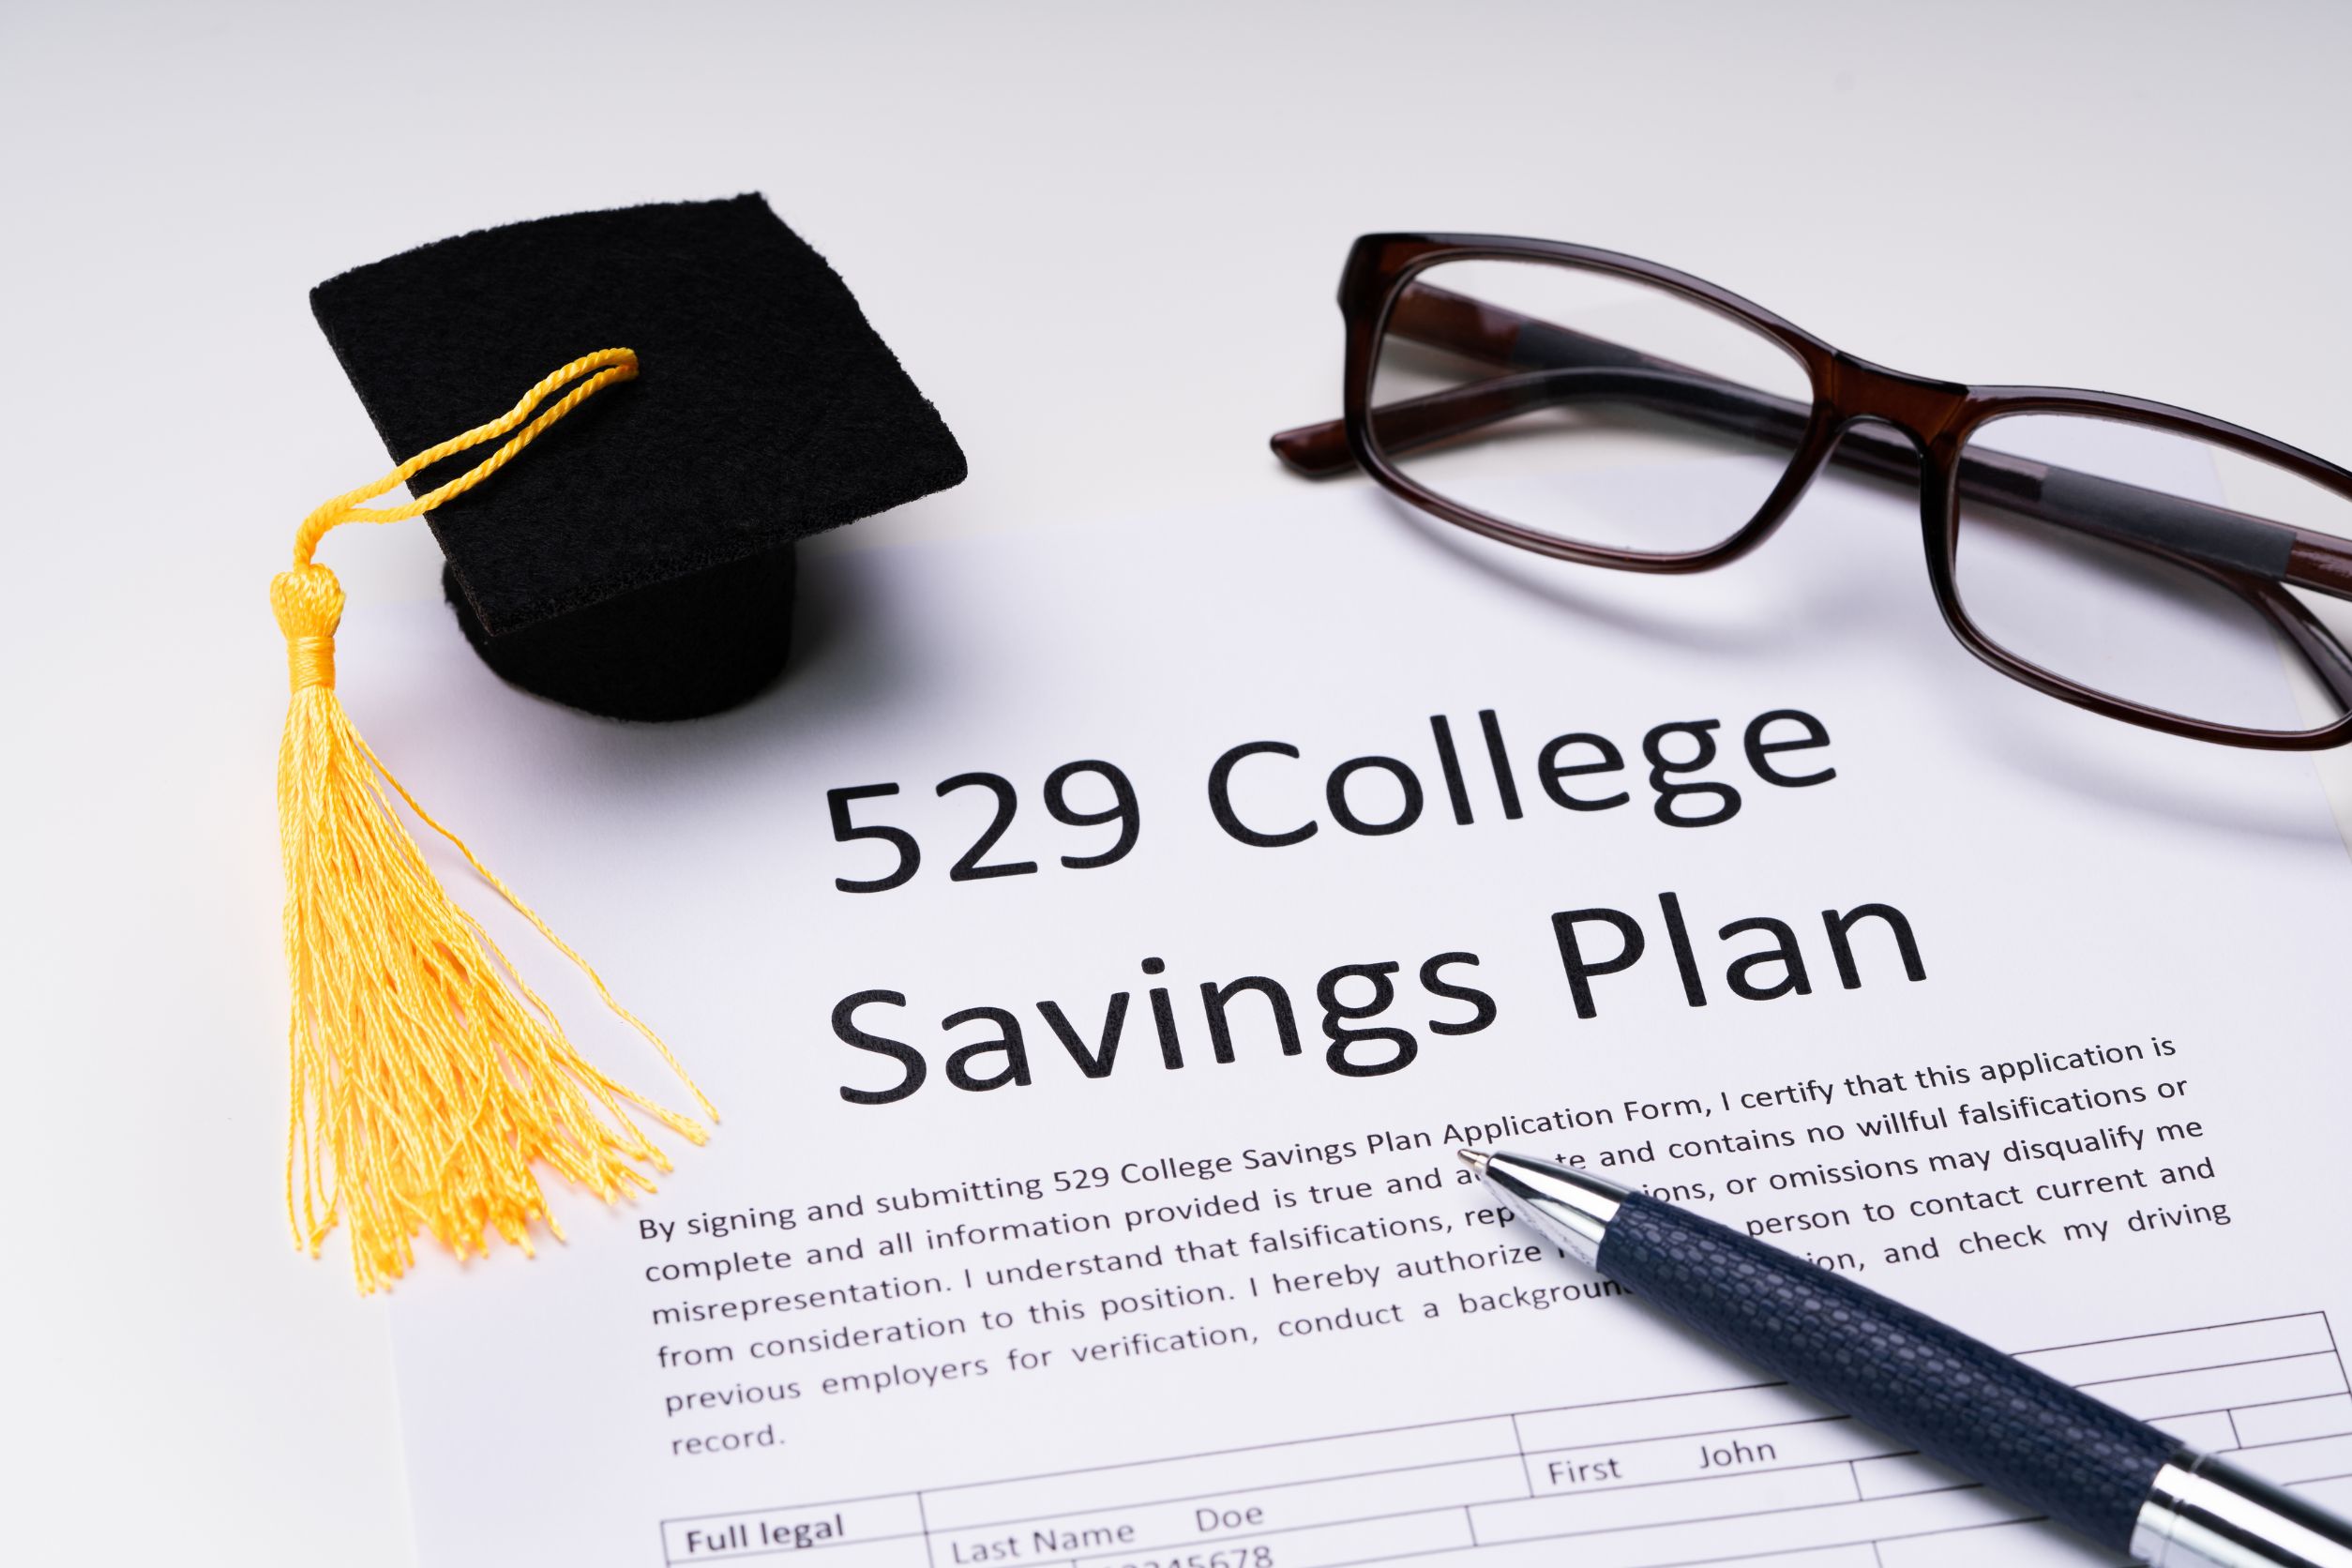 Start a 529 College Savings Plan